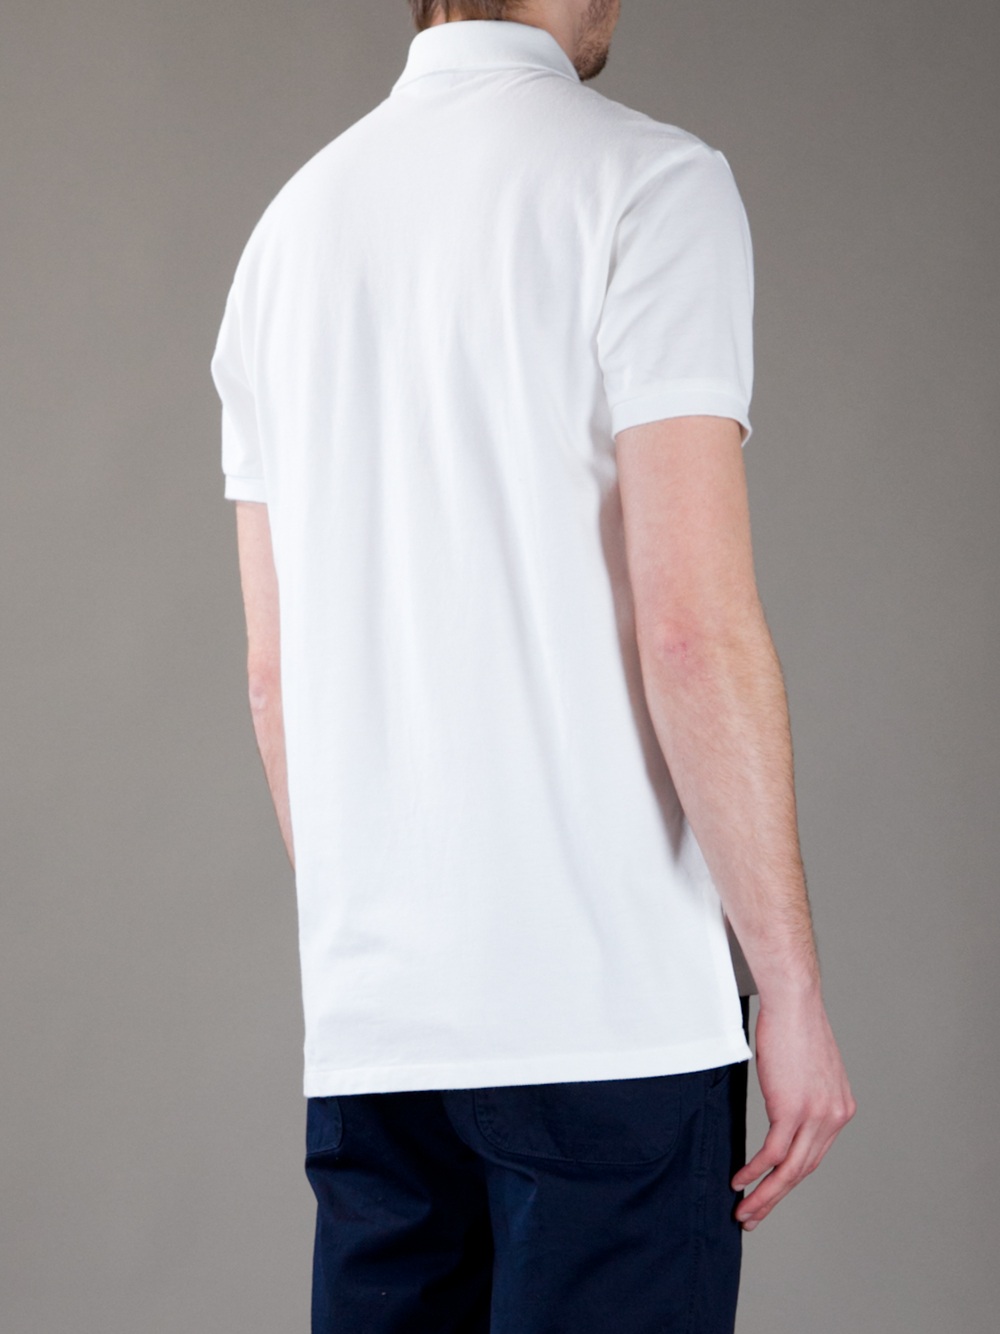 Polo Ralph Lauren Polo Shirt in White for Men - Lyst